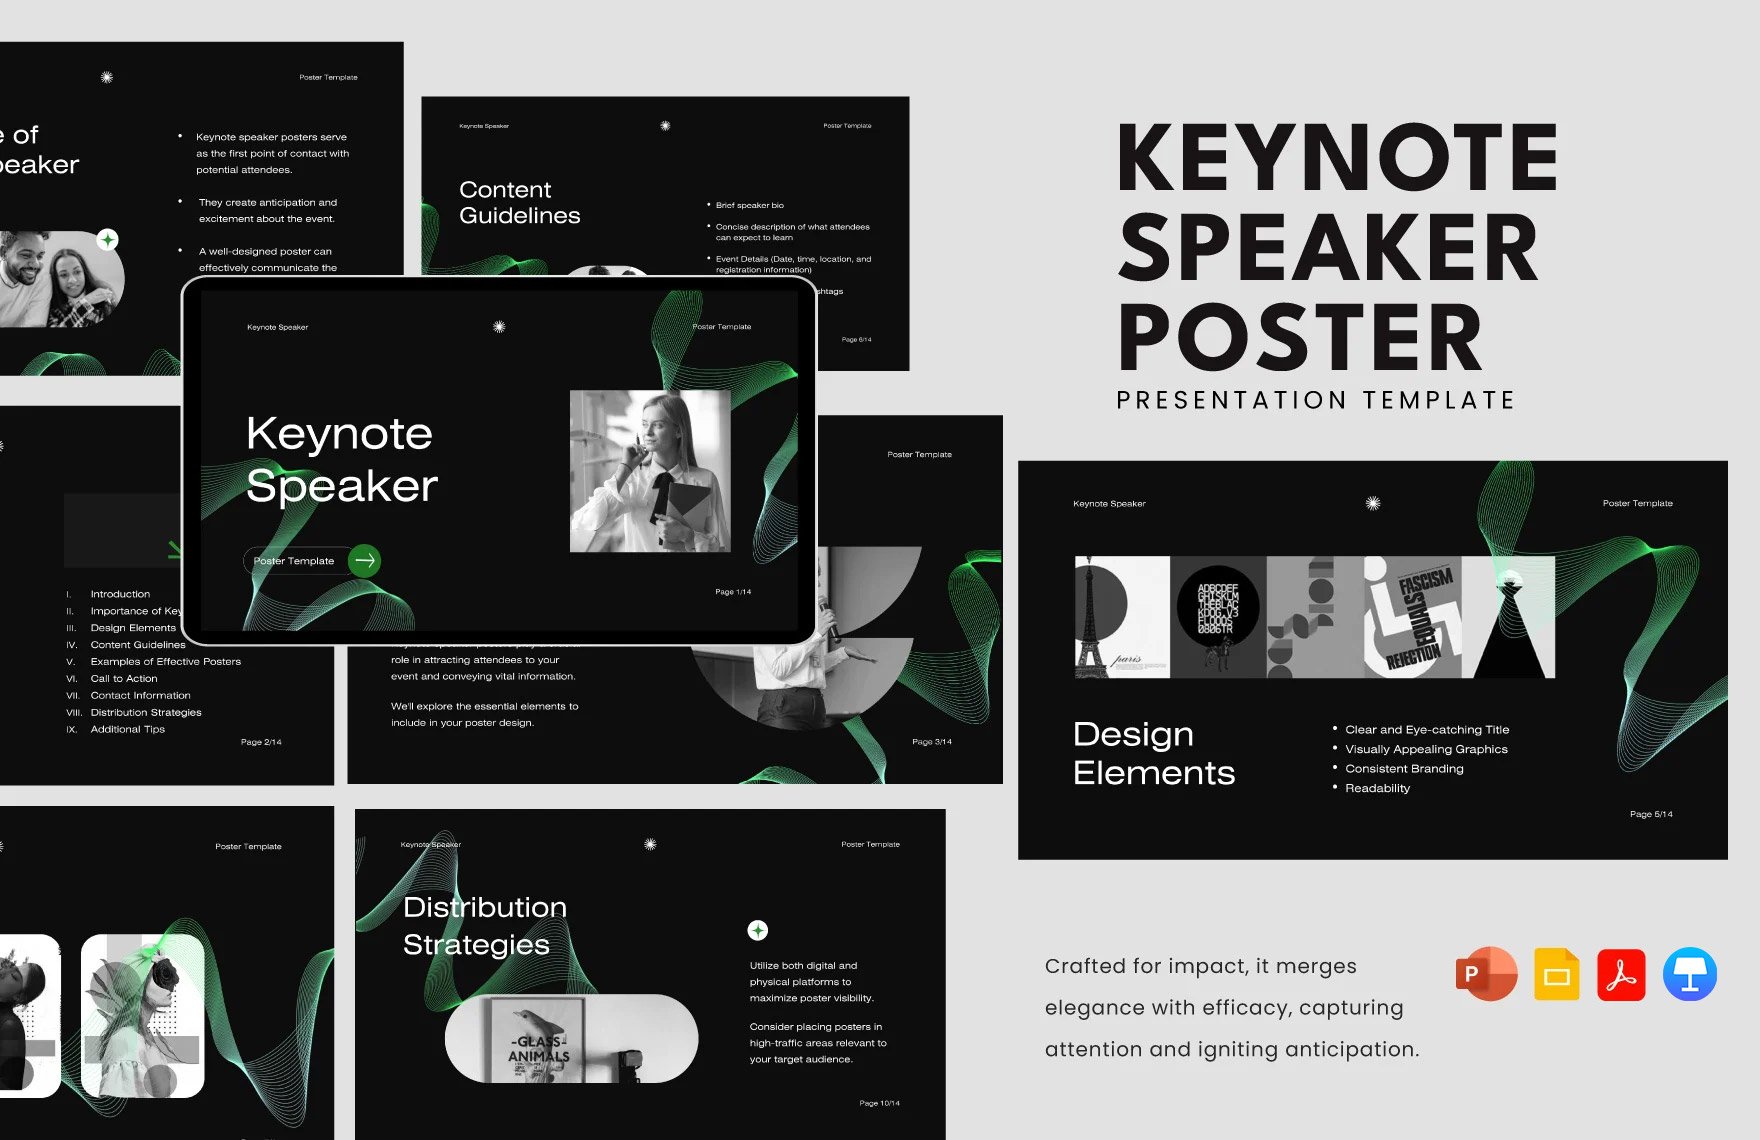 Keynote Speaker Poster Template in PDF, PowerPoint, Google Slides, Apple Keynote